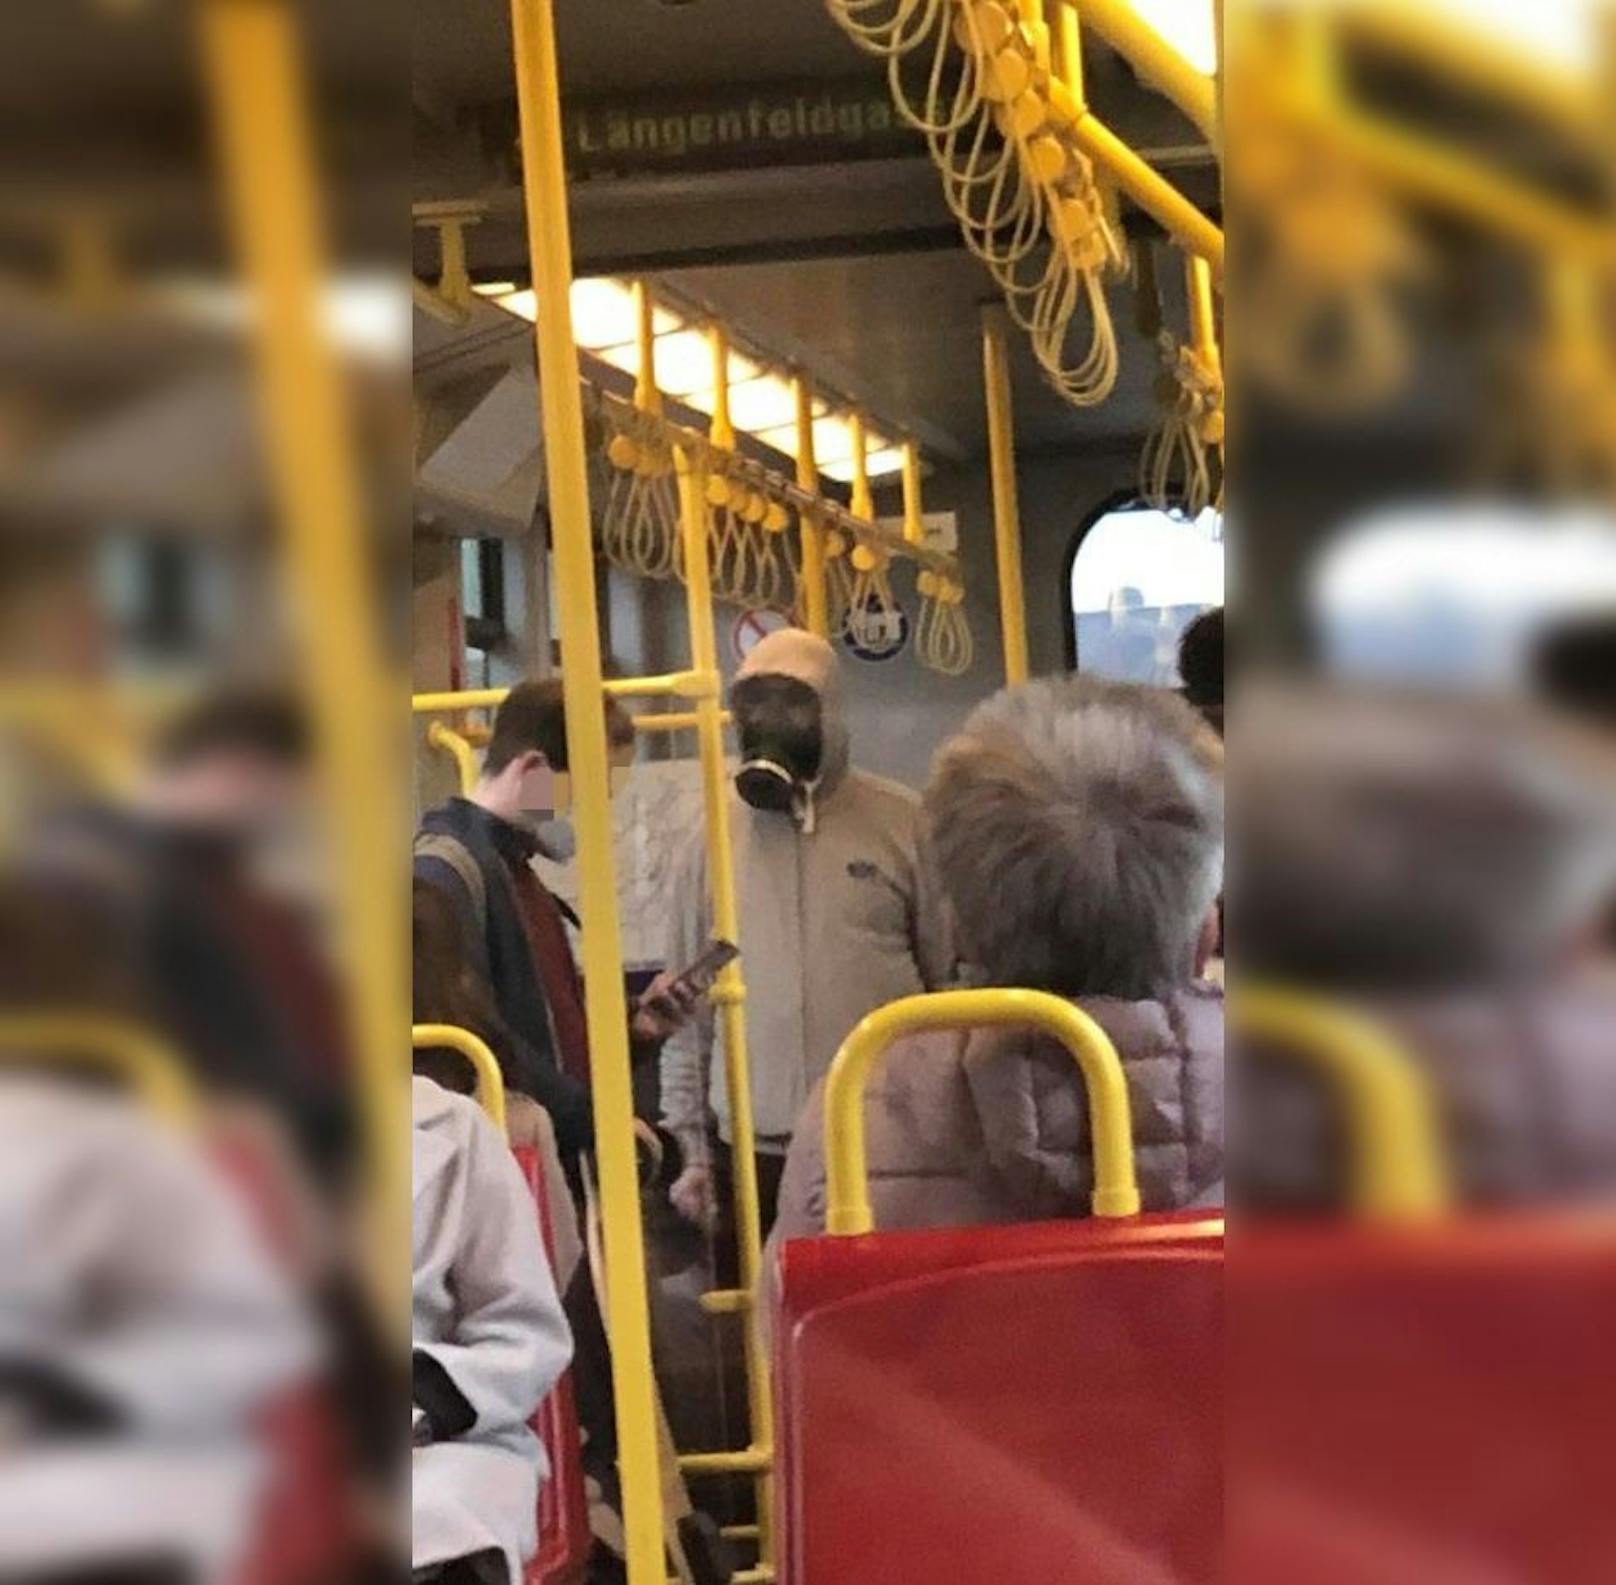 In Wien war ein Mann mit einer Gasmaske in der U-Bahn.